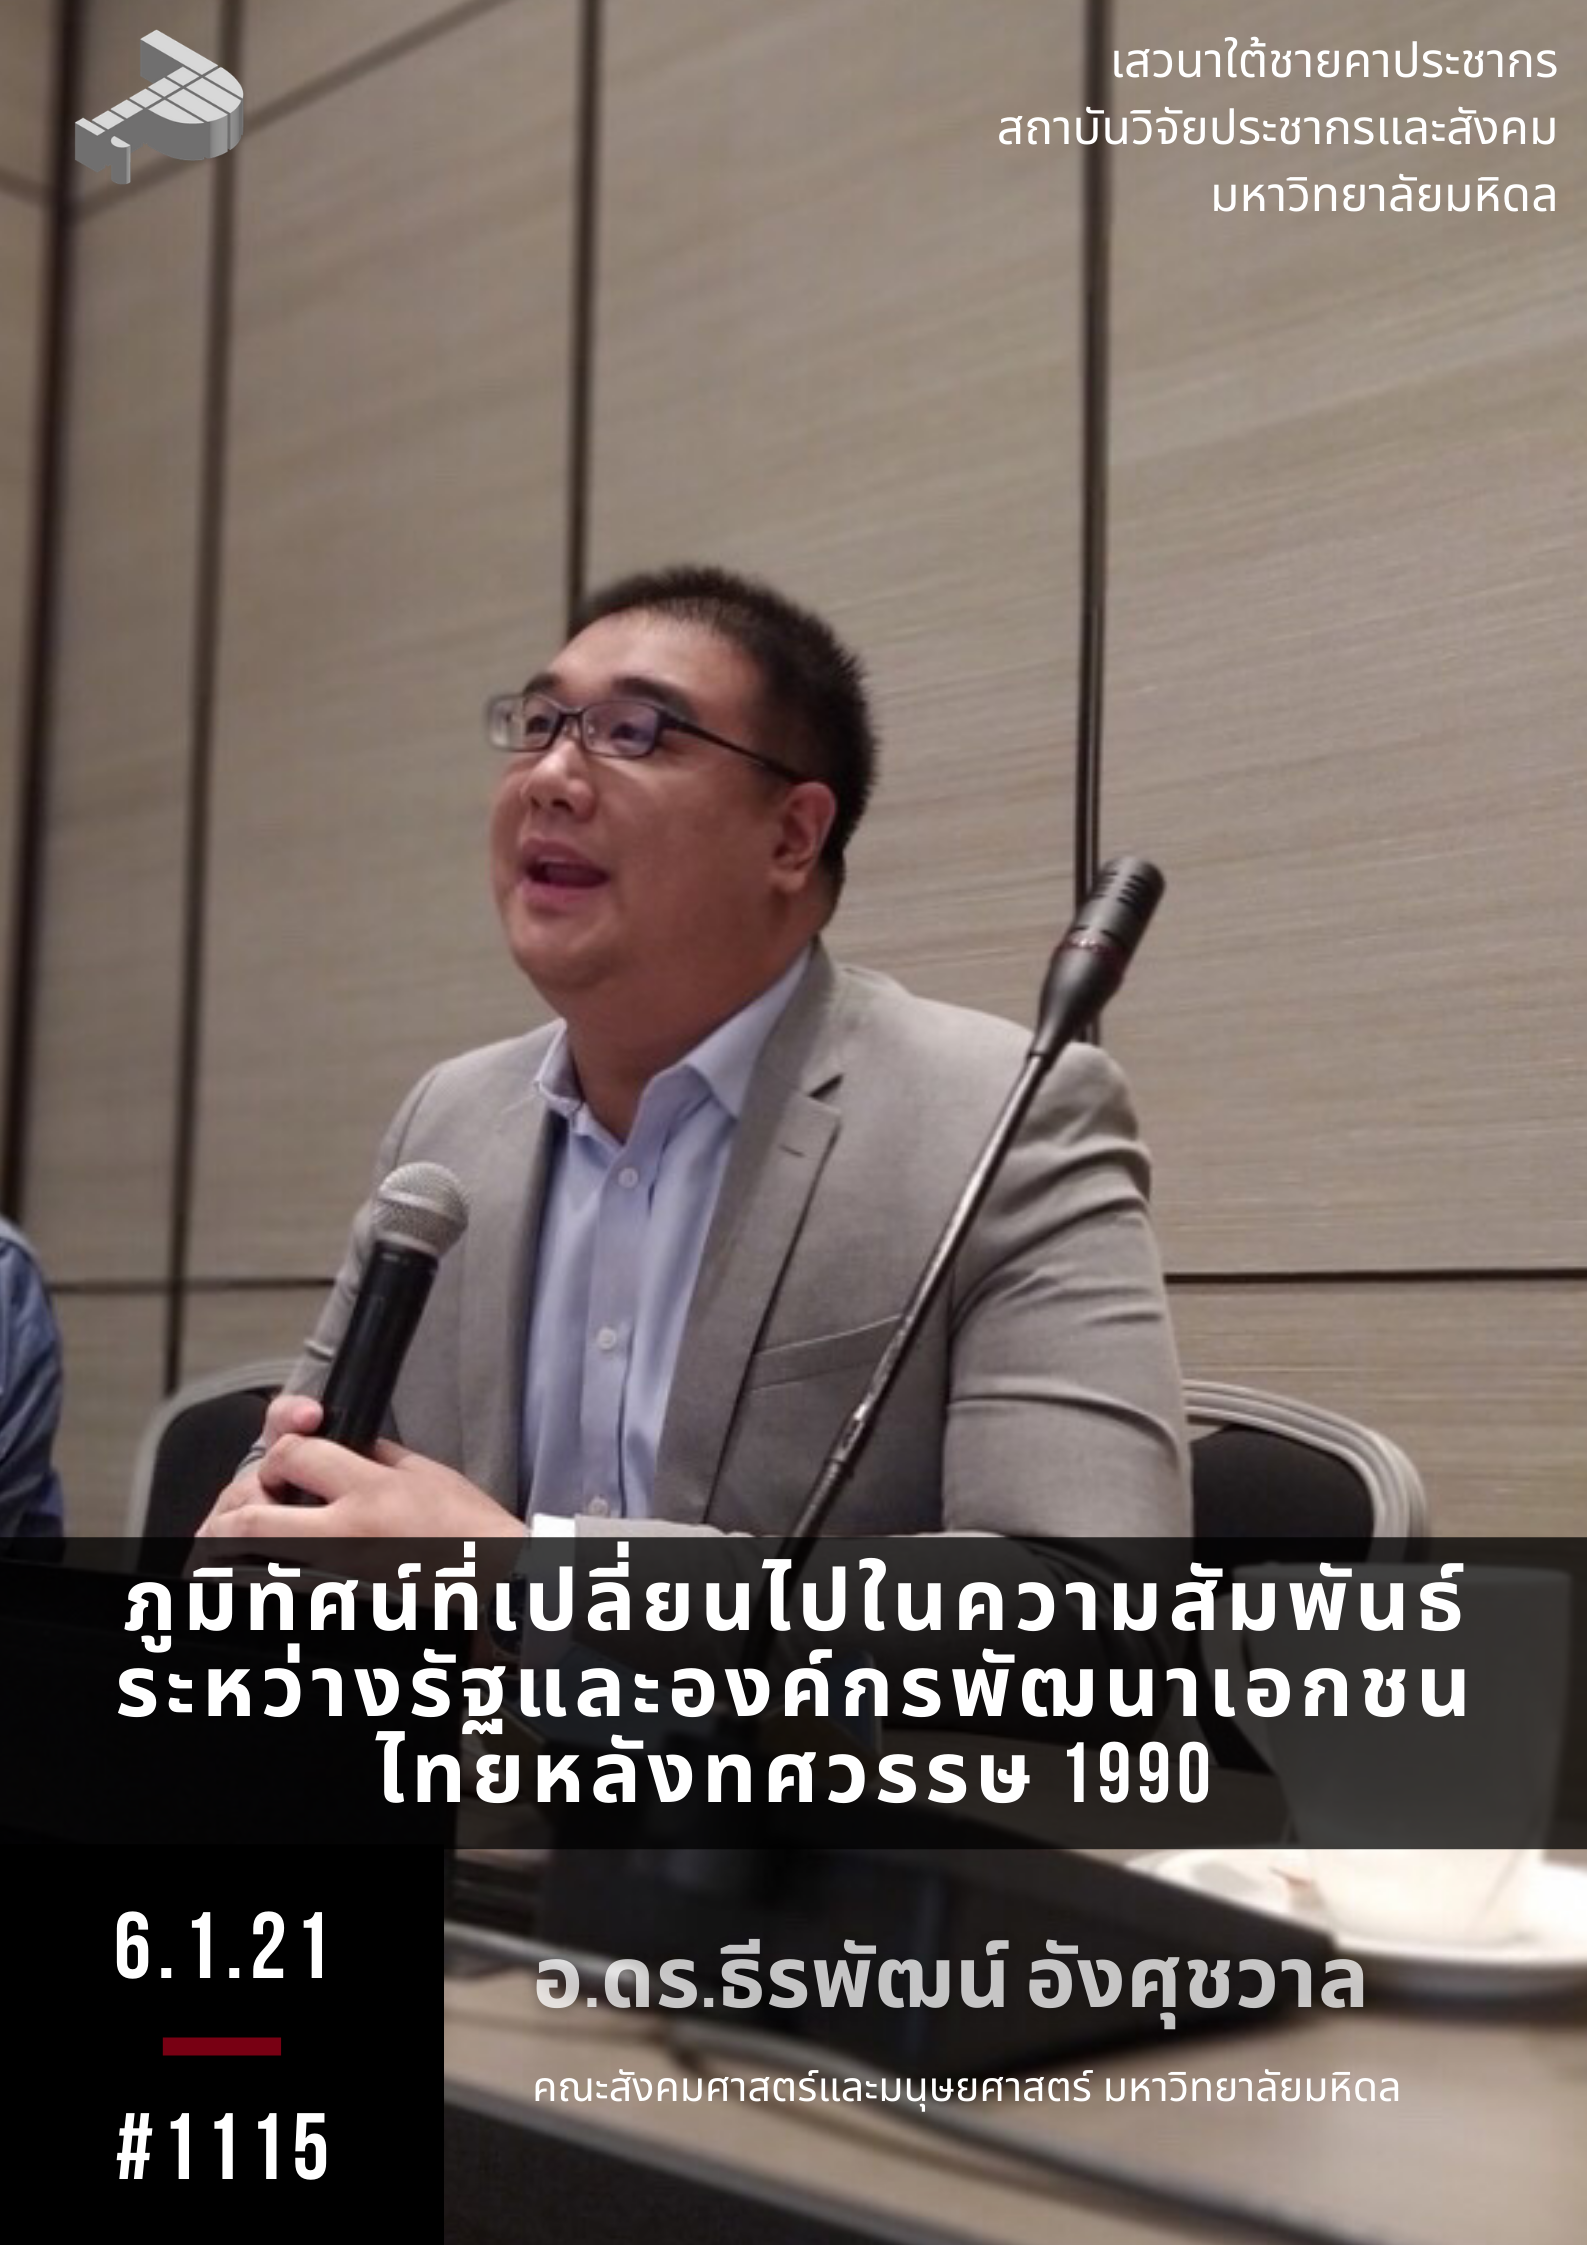 ภูมิทัศน์ที่เปลี่ยนไปในความสัมพันธ์ระหว่างรัฐและองค์กรพัฒนาเอกชนไทยหลังทศวรรษ 1990